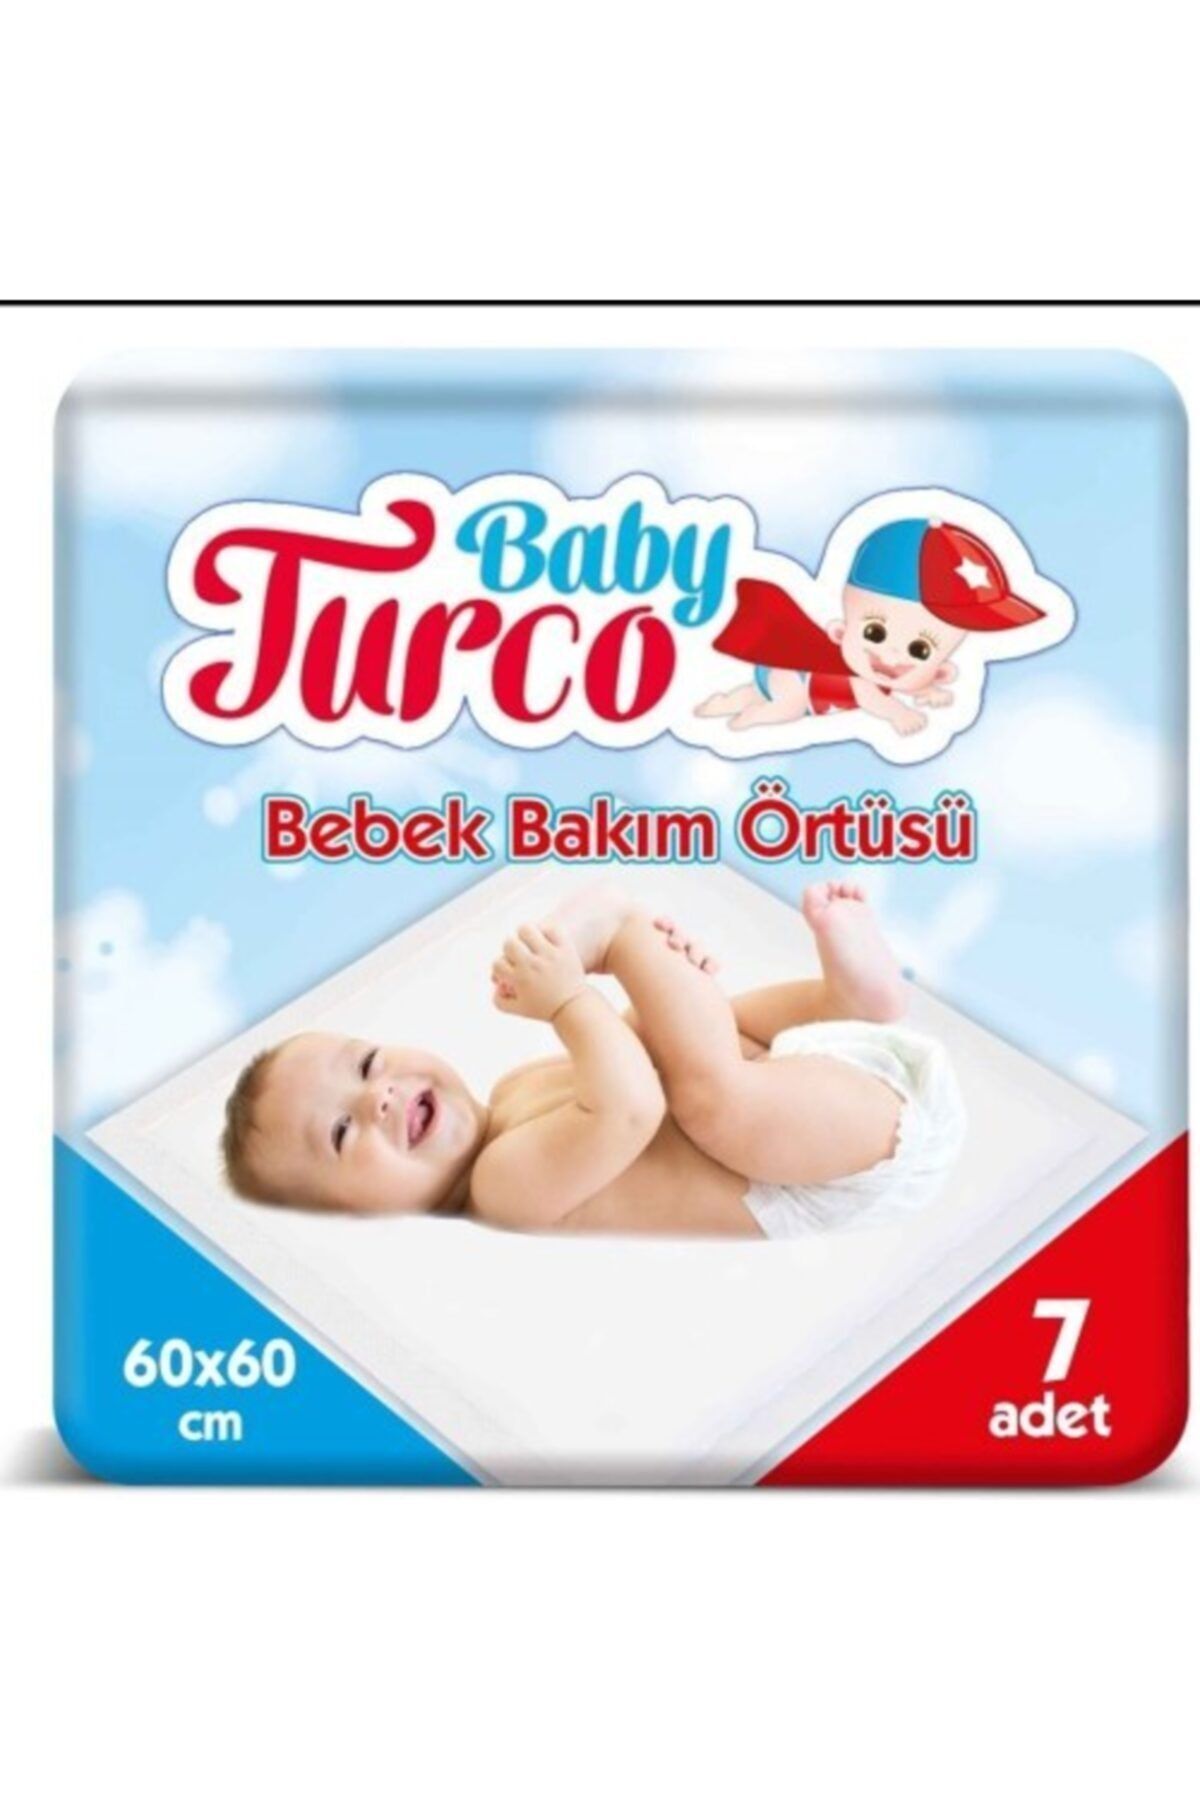 Baby Turco Bebek Bakım Örtüsü 60x60